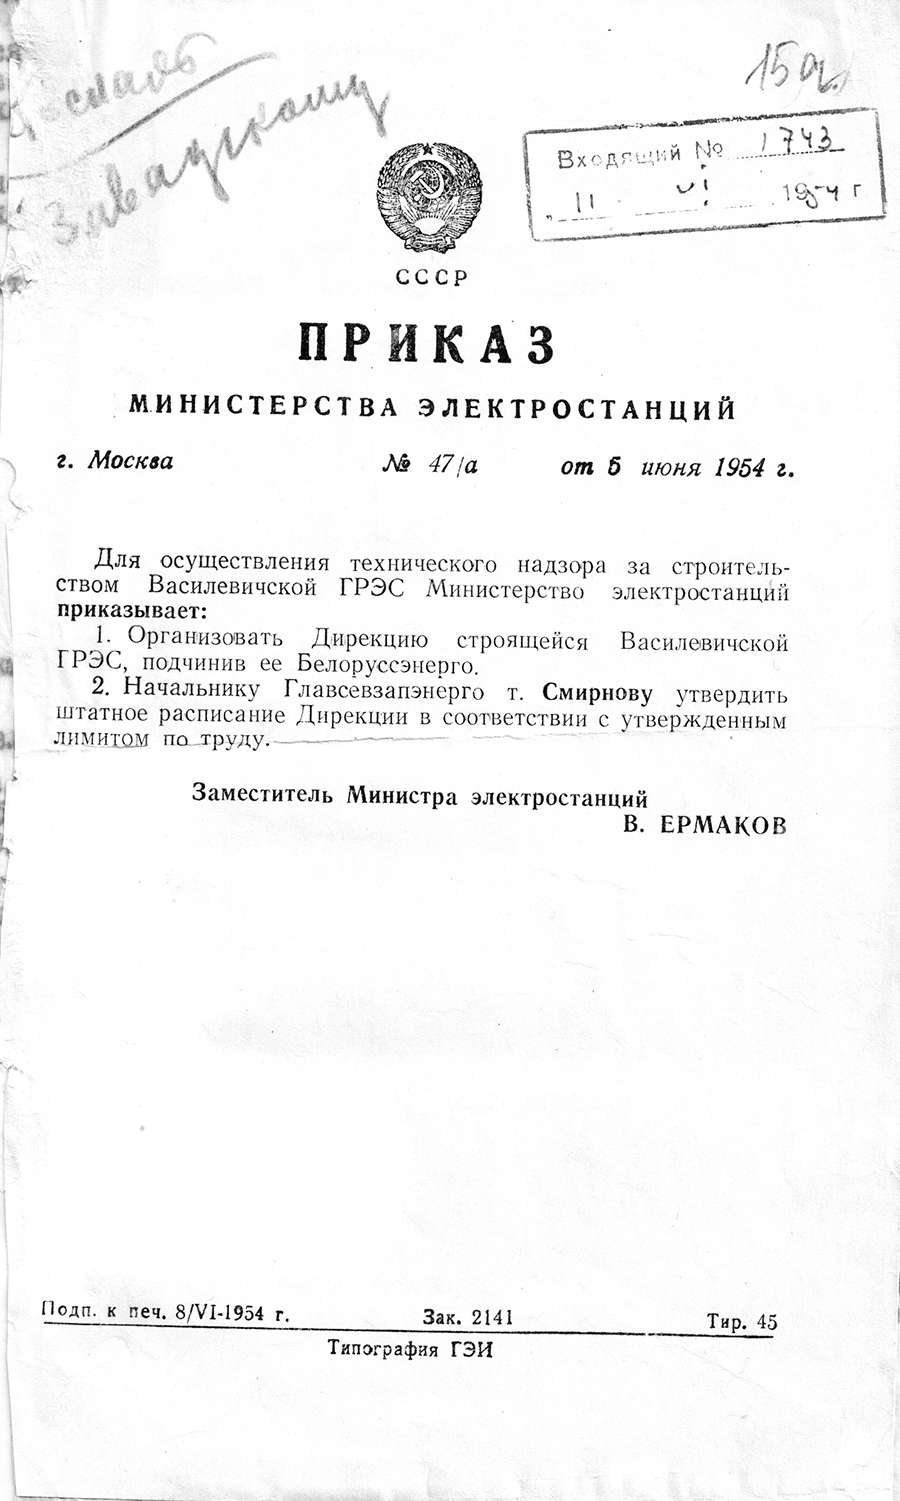 Befehl Nr. 47/a des Ministeriums für Kraftwerke der UdSSR über die Durchführung der Aufsicht des Autors über den Bau des staatlichen Kraftwerks von Vasilevich-стр. 0